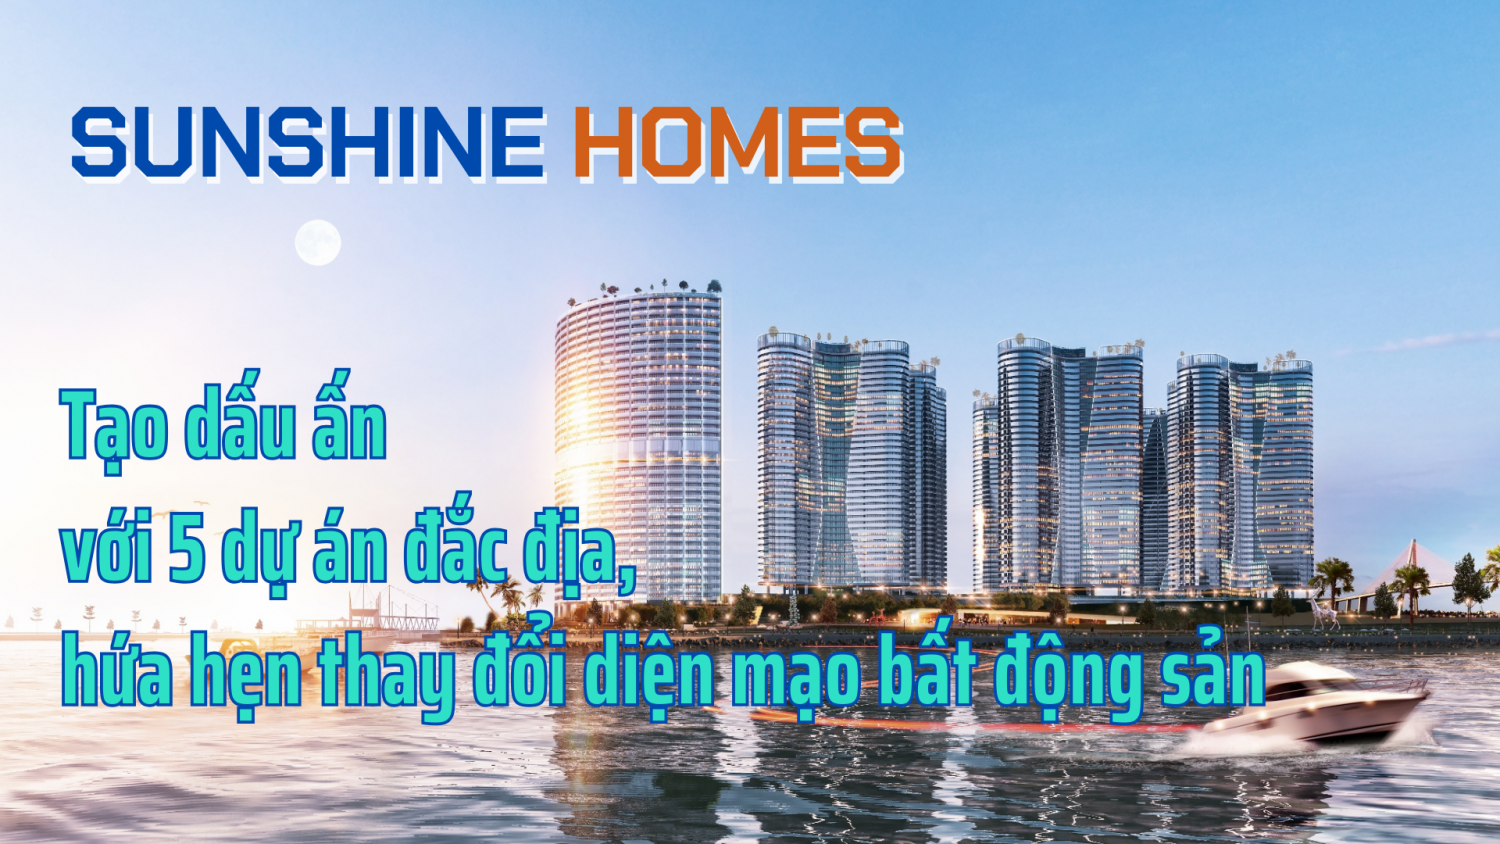 Sunshine Homes tạo dấu ấn với 5 dự án đắc địa, hứa hẹn thay đổi diện mạo bất động sản